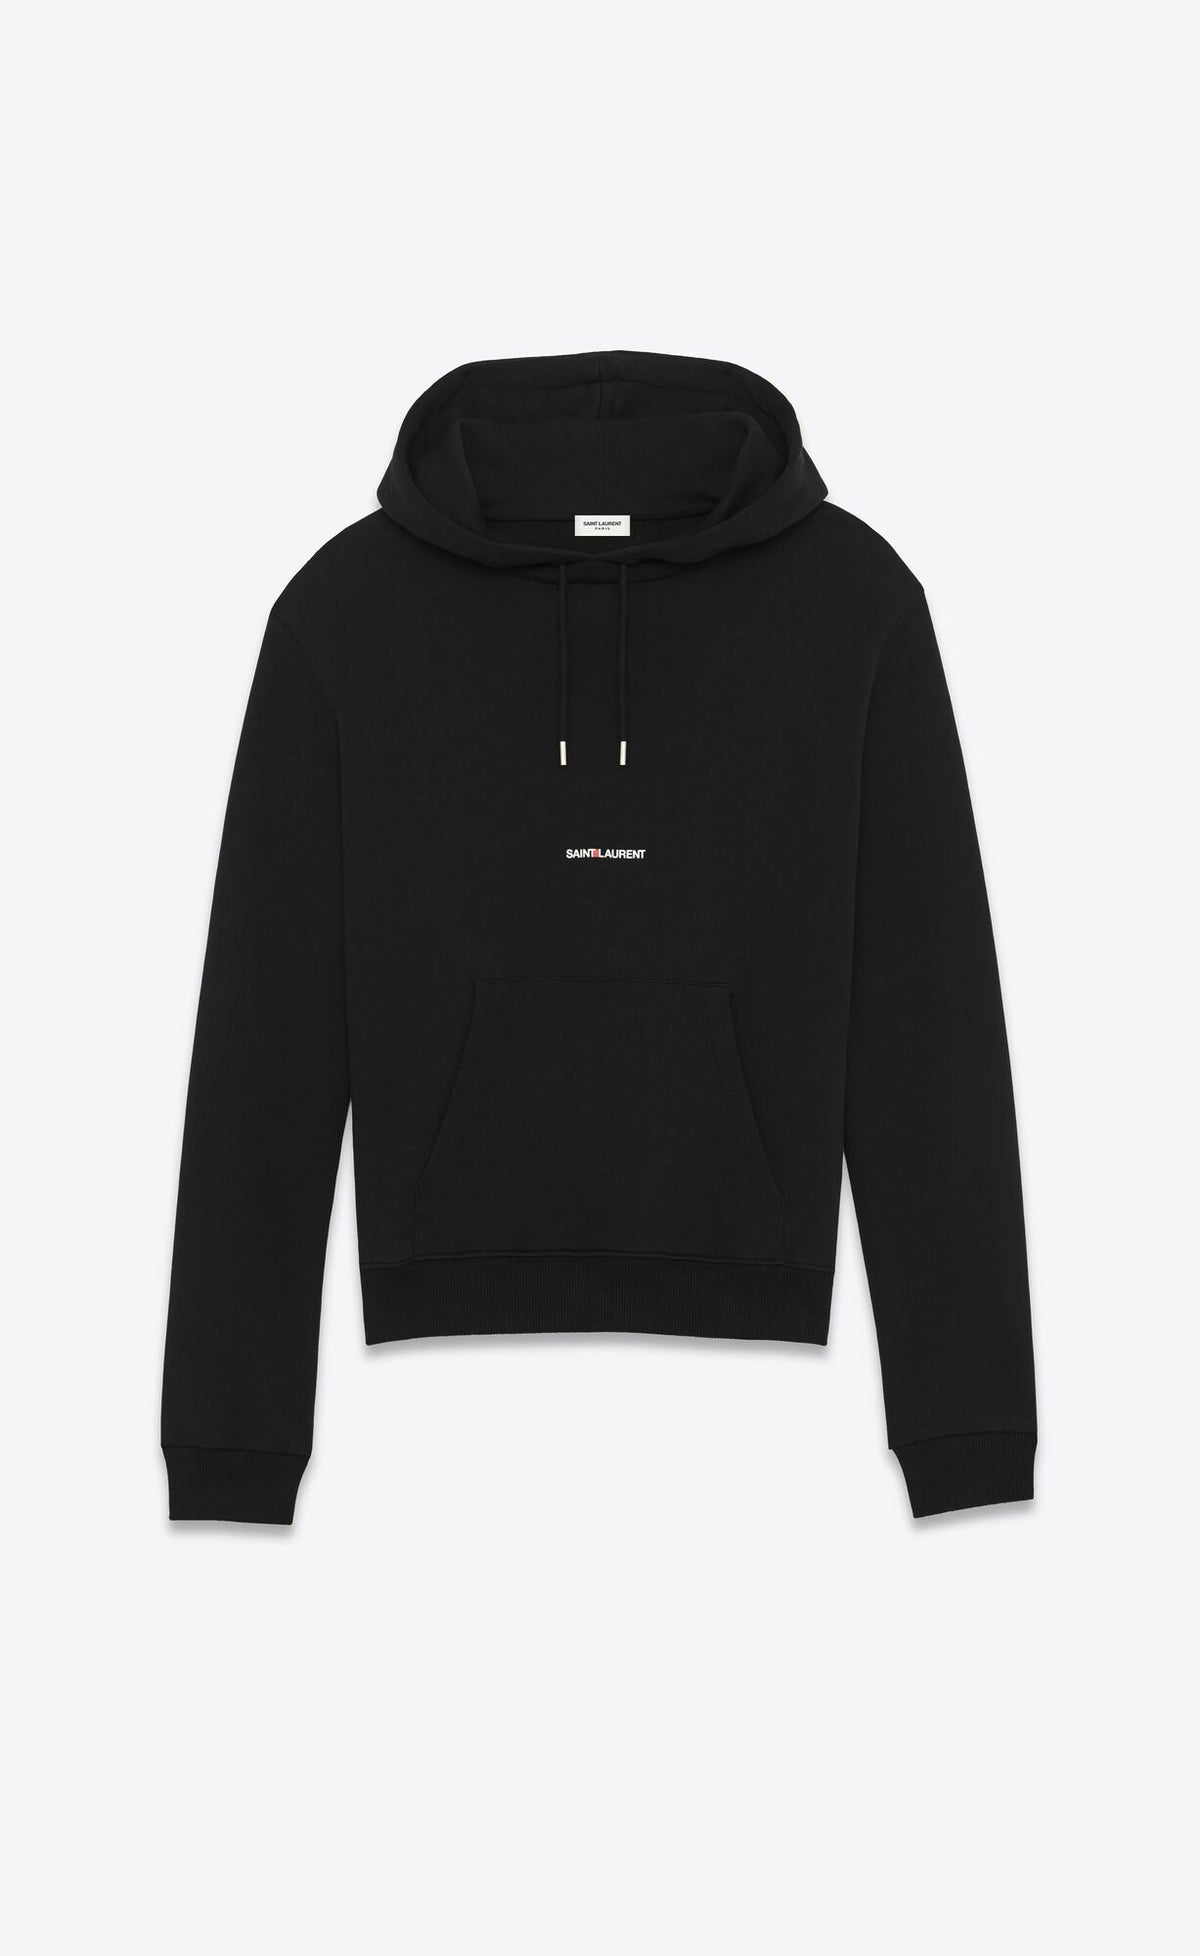 Yves Saint Laurent Black Logo Hoodie Sweatshirt